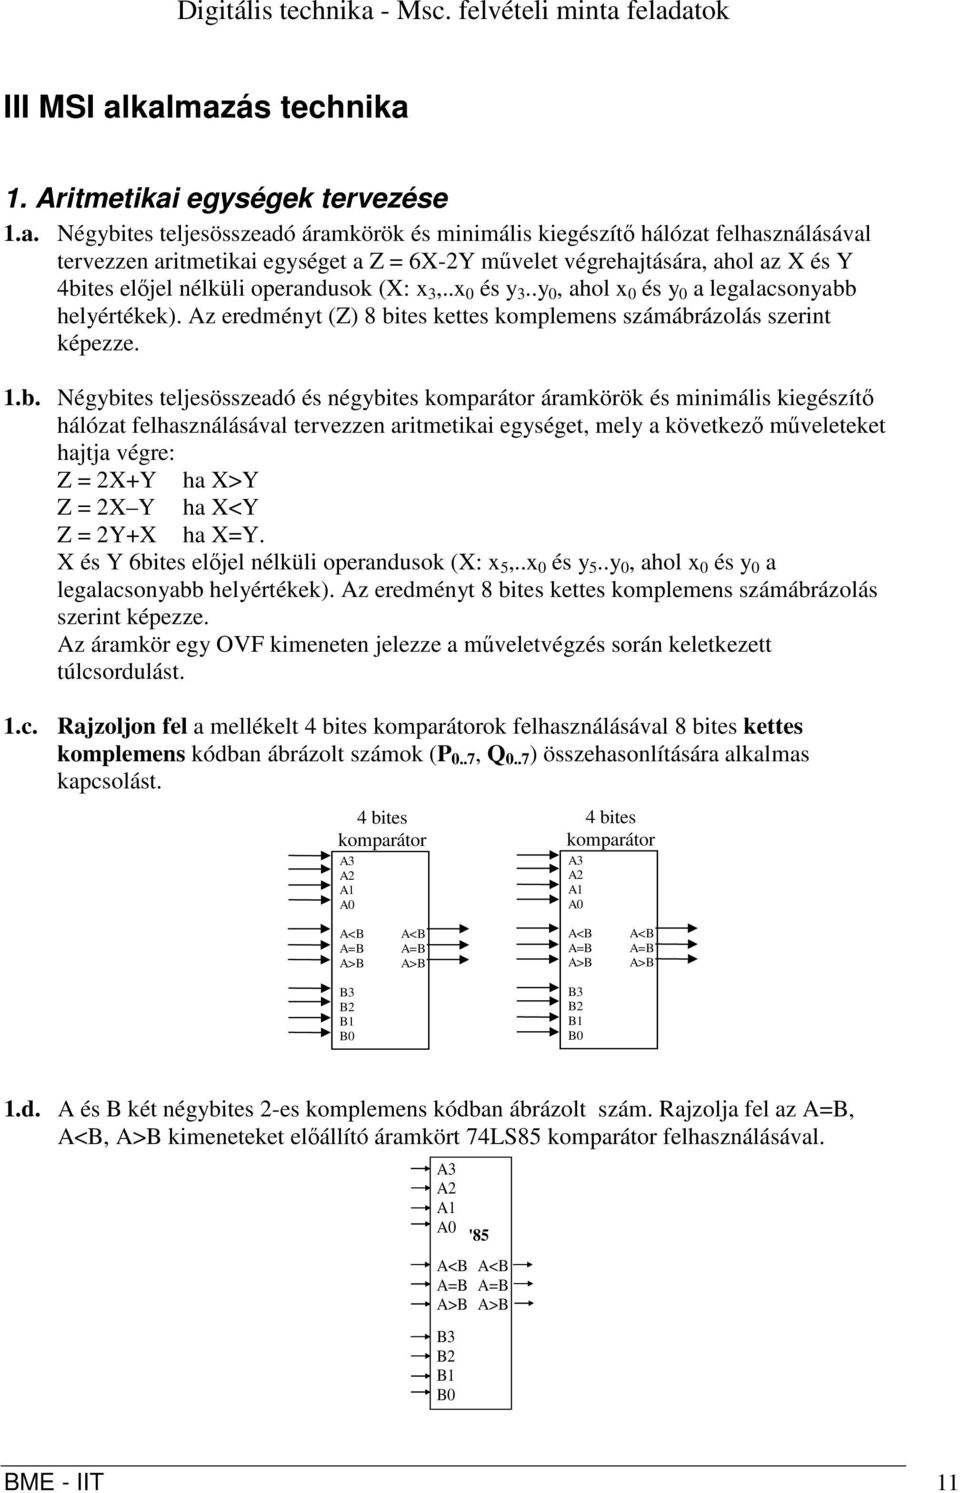 feladatok III MSI alkalmazás technika. ritmetikai egységek tervezése.a. Négybites teljesösszeadó áramkörök és minimális kiegészítő hálózat felhasználásával tervezzen aritmetikai egységet a Z = 6X-2Y